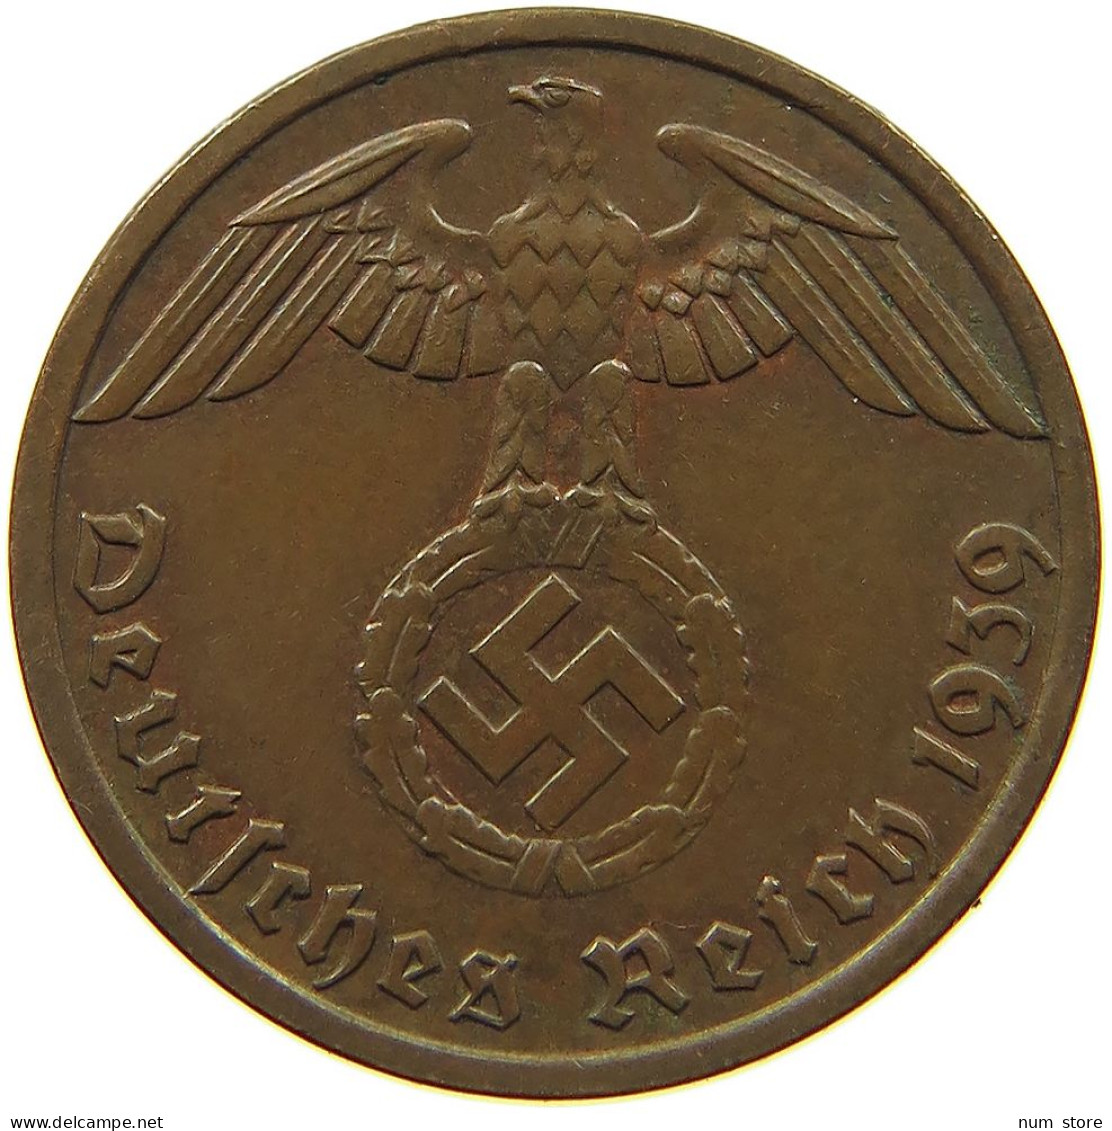 GERMANY 1 REICHSPFENNIG 1939 E #s083 0745 - 1 Reichspfennig